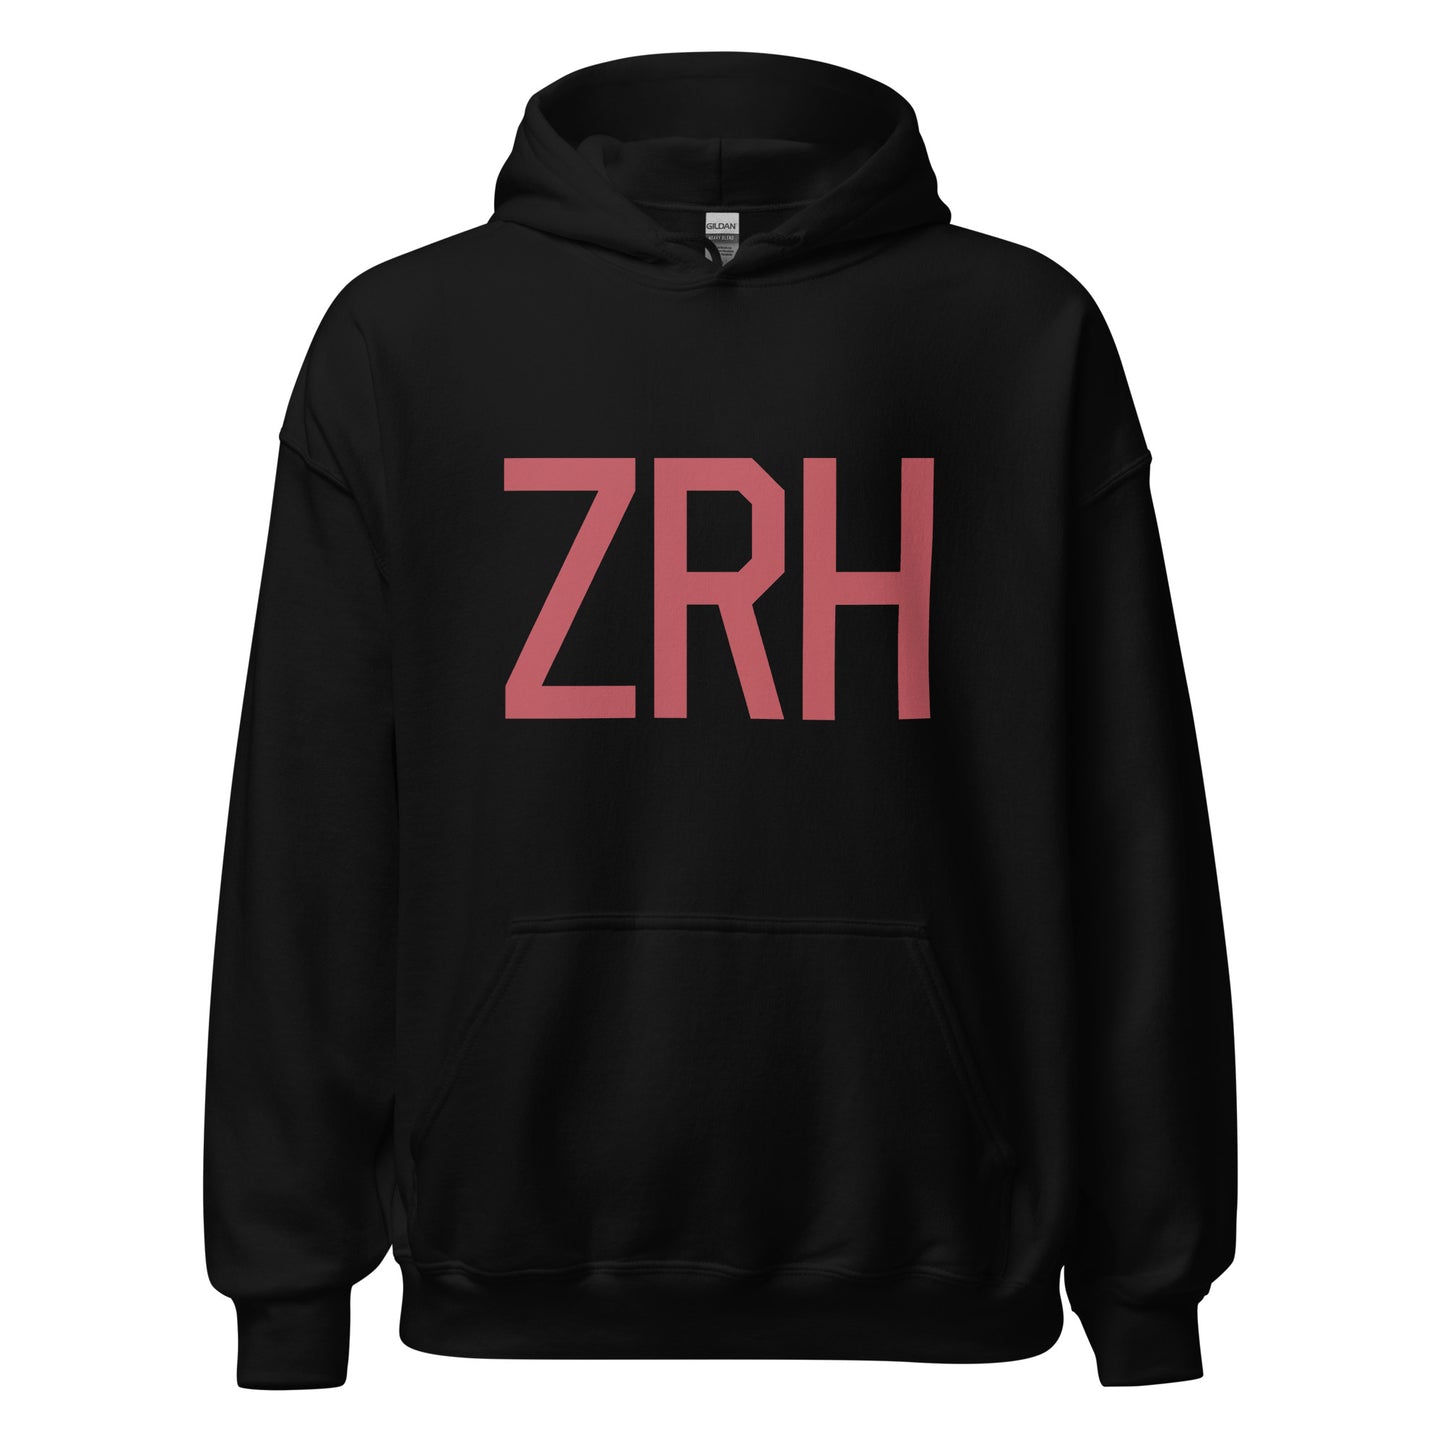 Aviation Enthusiast Hoodie - Deep Pink Graphic • ZRH Zurich • YHM Designs - Image 03